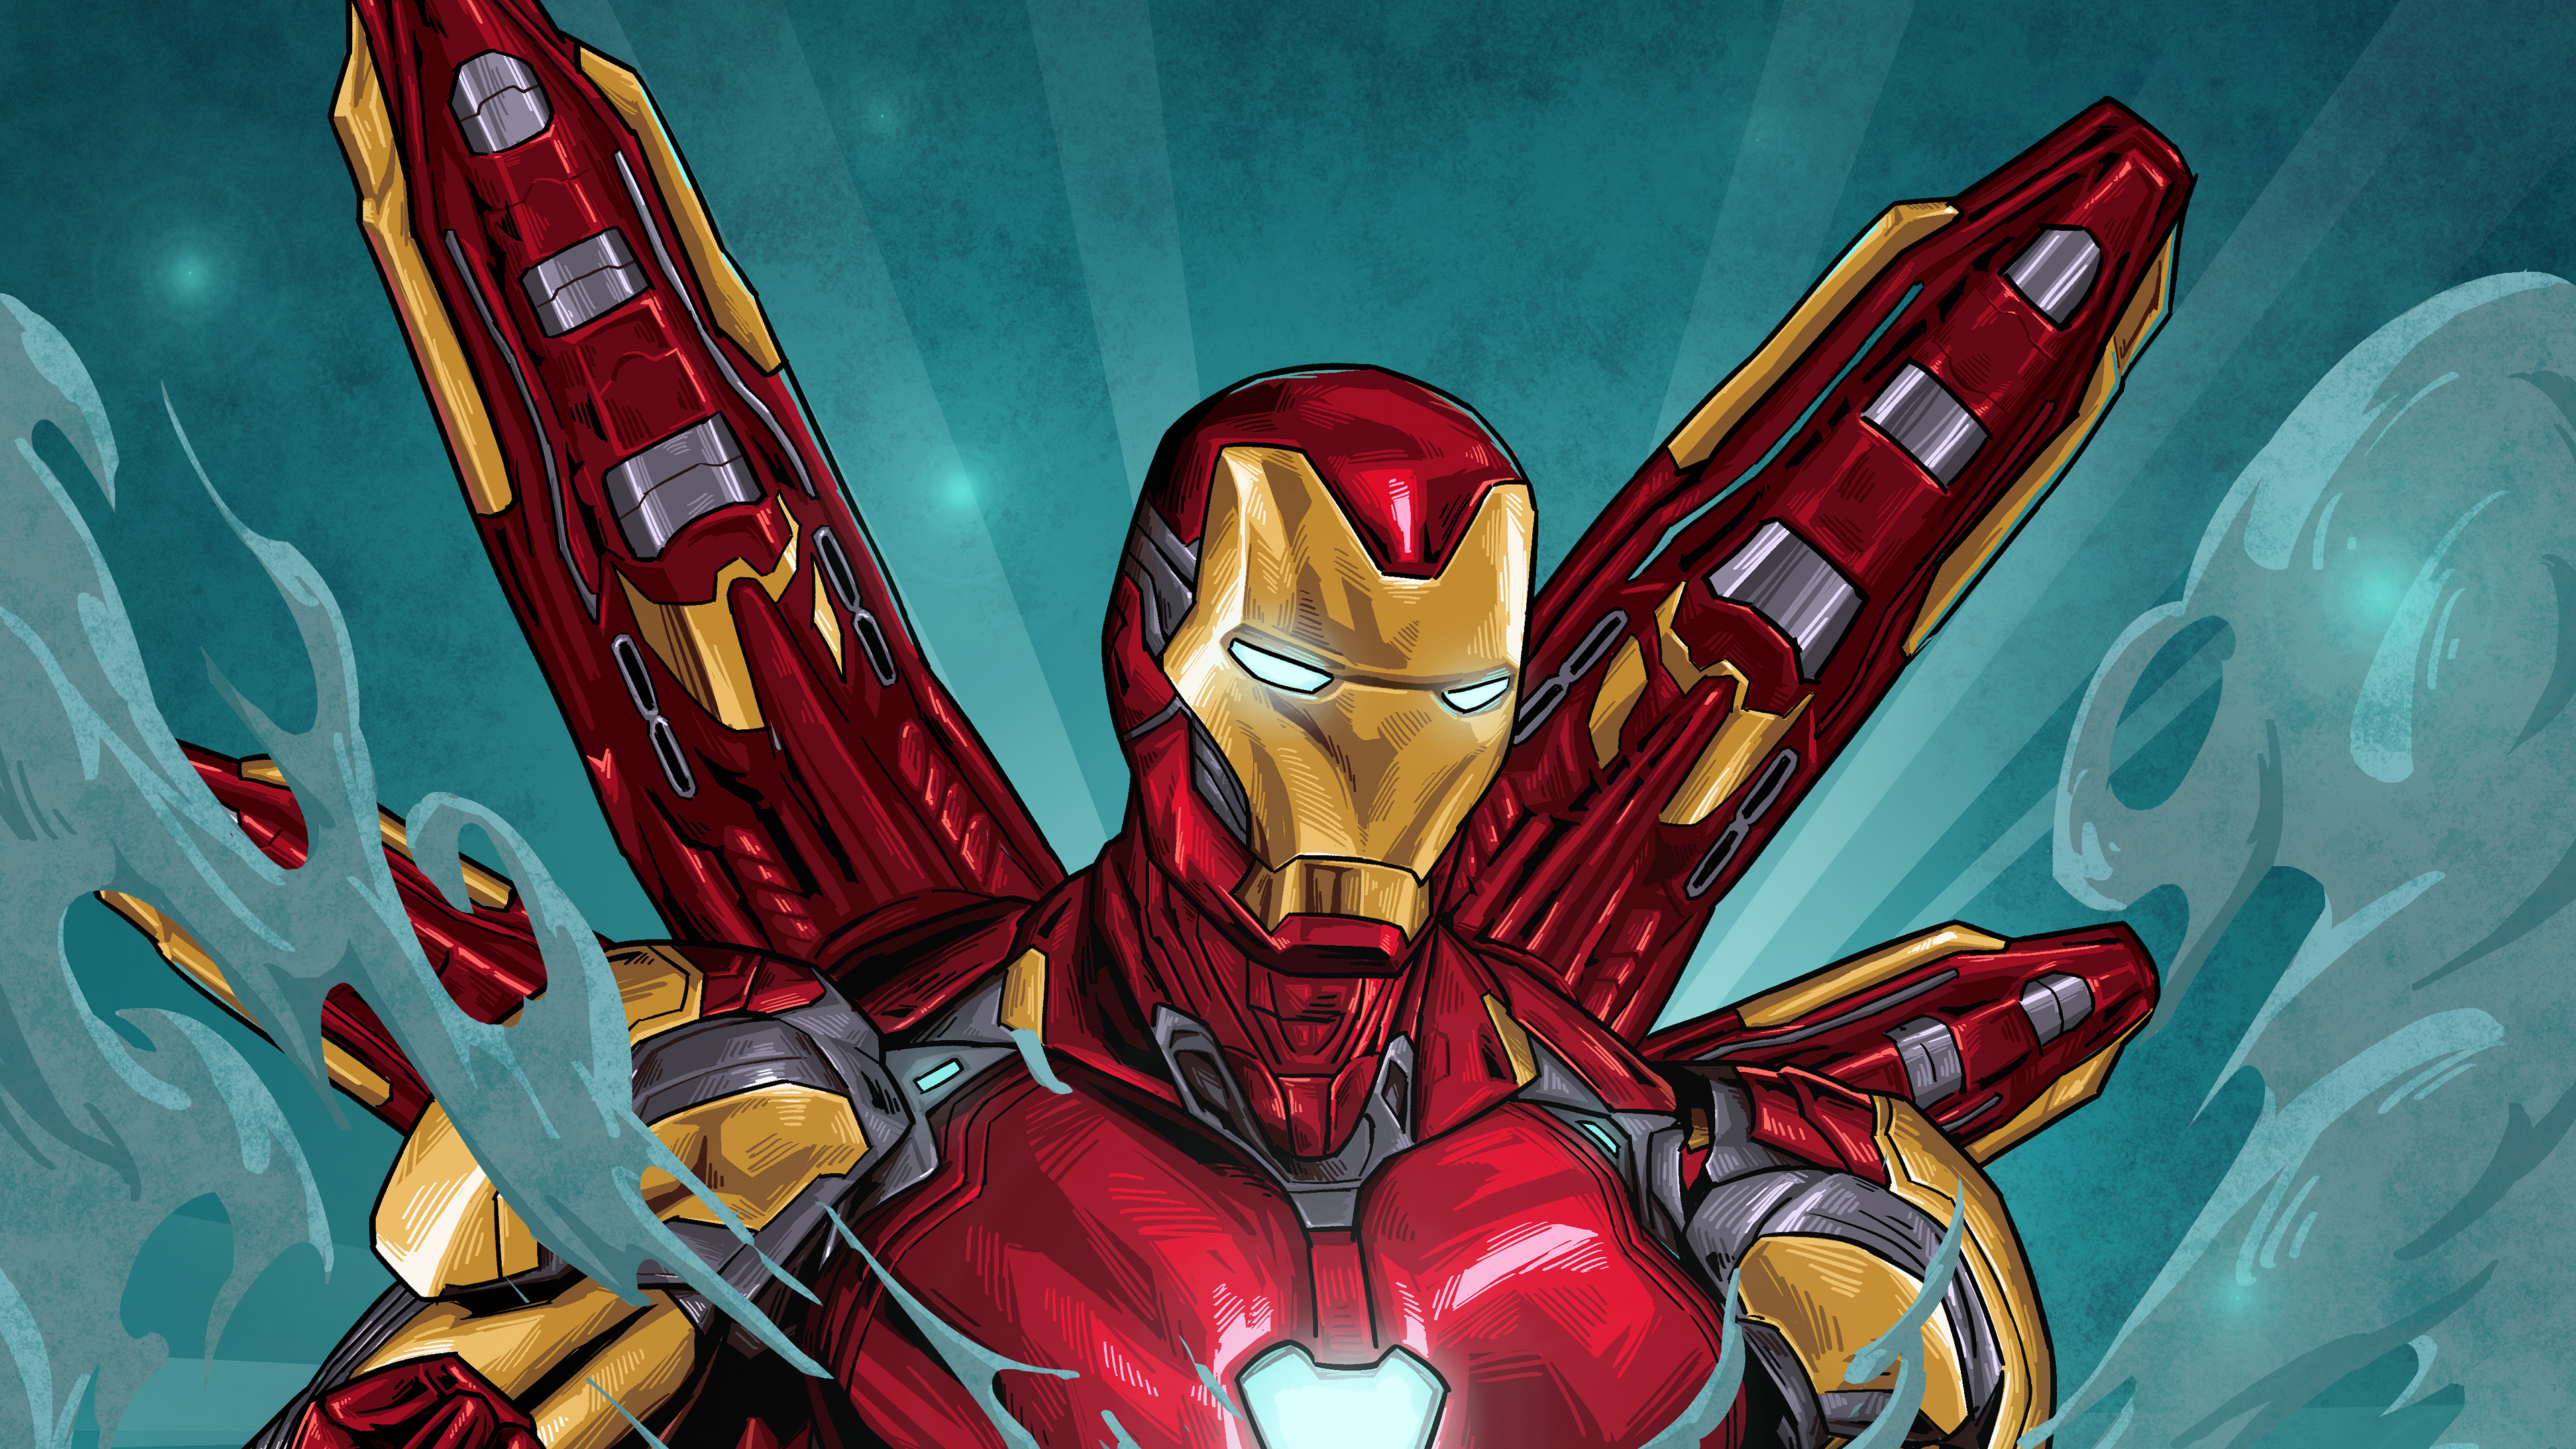 Bộ giáp Iron Man nghệ thuật là tuyệt phẩm hoàn hảo để cập nhật giao diện máy tính của bạn. Với hình ảnh sắc nét và chi tiết từng đường nét, bộ giáp Iron Man truyền tải rõ ràng tinh thần của siêu anh hùng này.